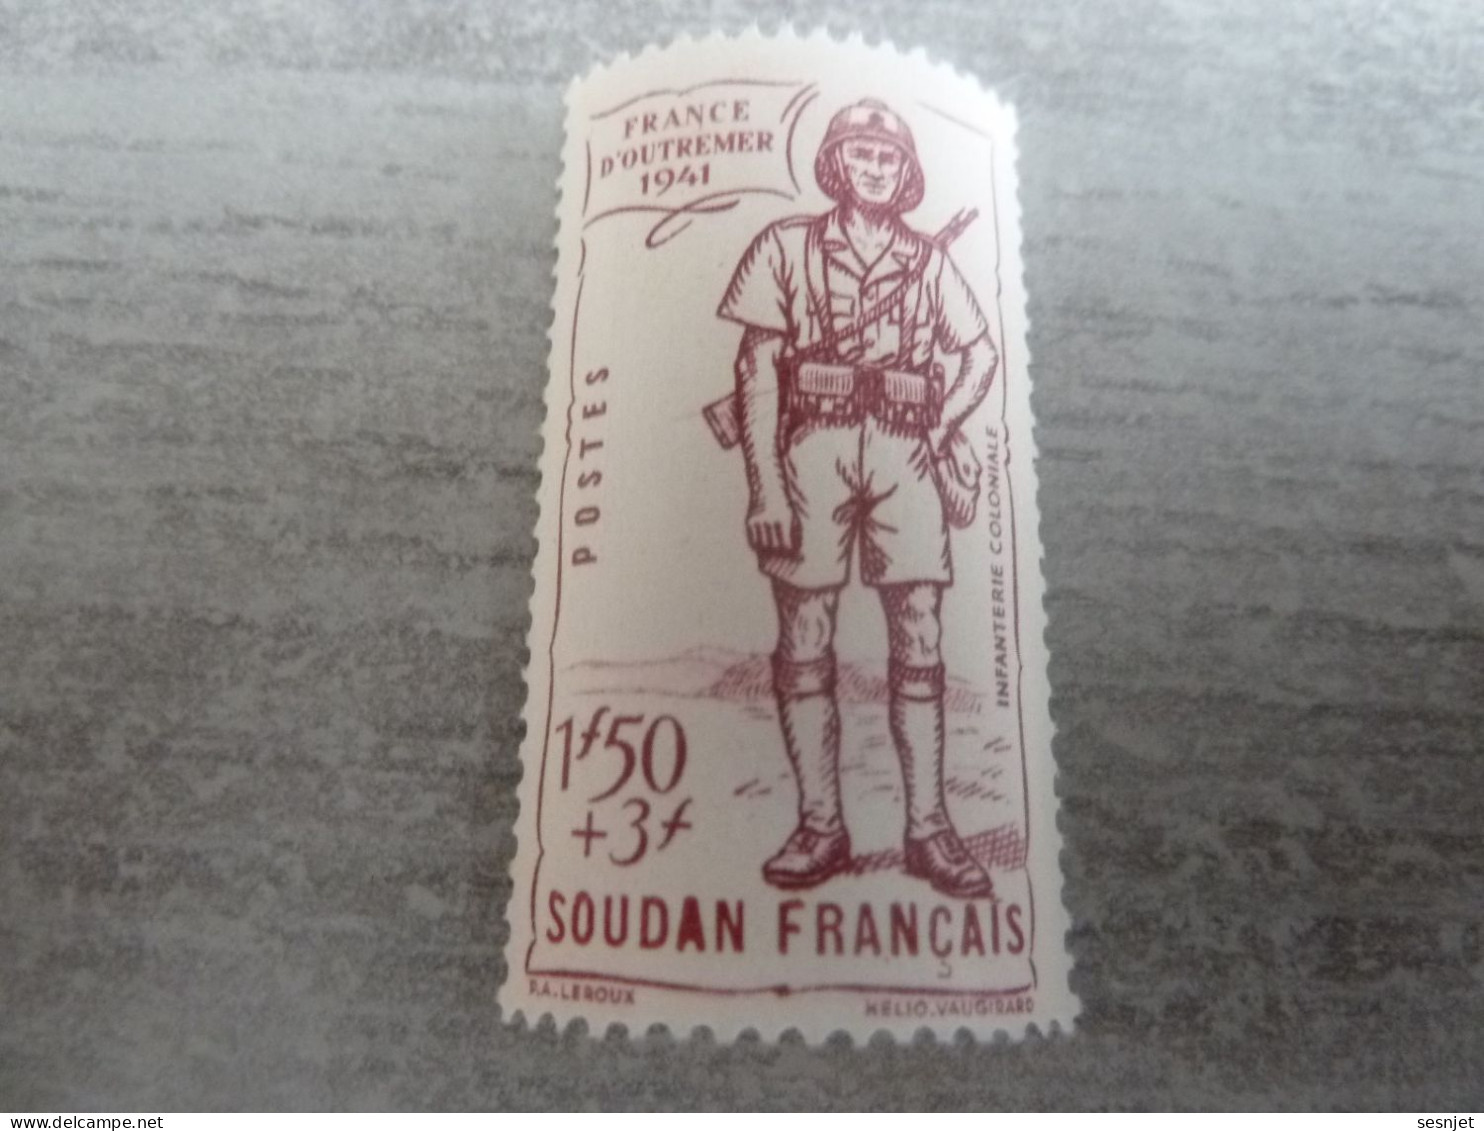 Soudan - Défense De L'Empire - Infanterie Coloniale - 1f.50+3f. - Yt 123 - Lilas - Neuf Sans Trace - Année 1941 - - Unused Stamps